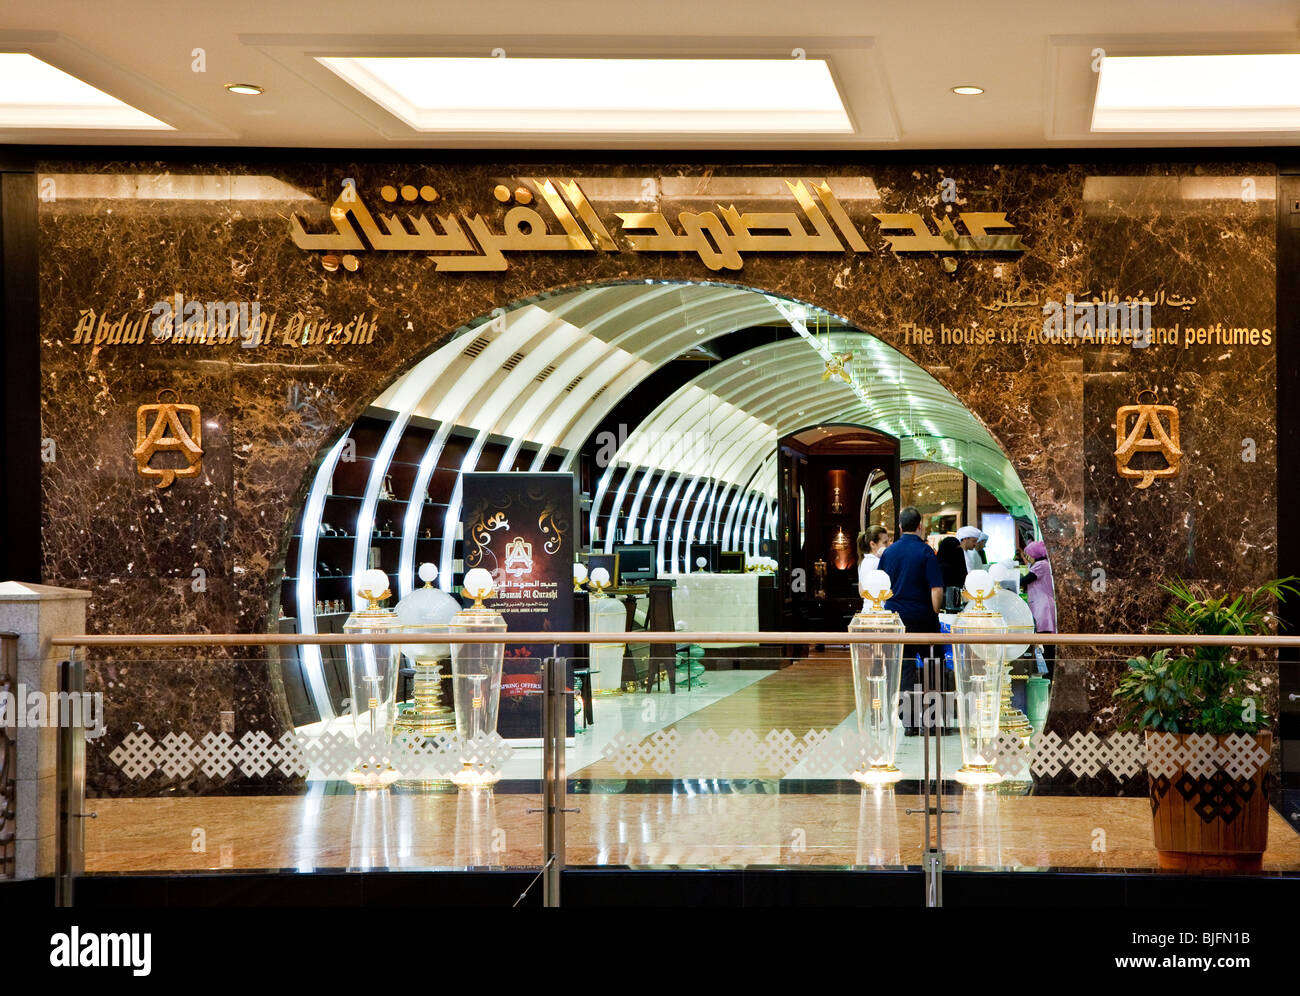 Façade extérieure d'un magasin de parfums d'Arabie dans le centre commercial Emirates, Dubaï, Émirats arabes unis, ÉMIRATS ARABES UNIS Banque D'Images